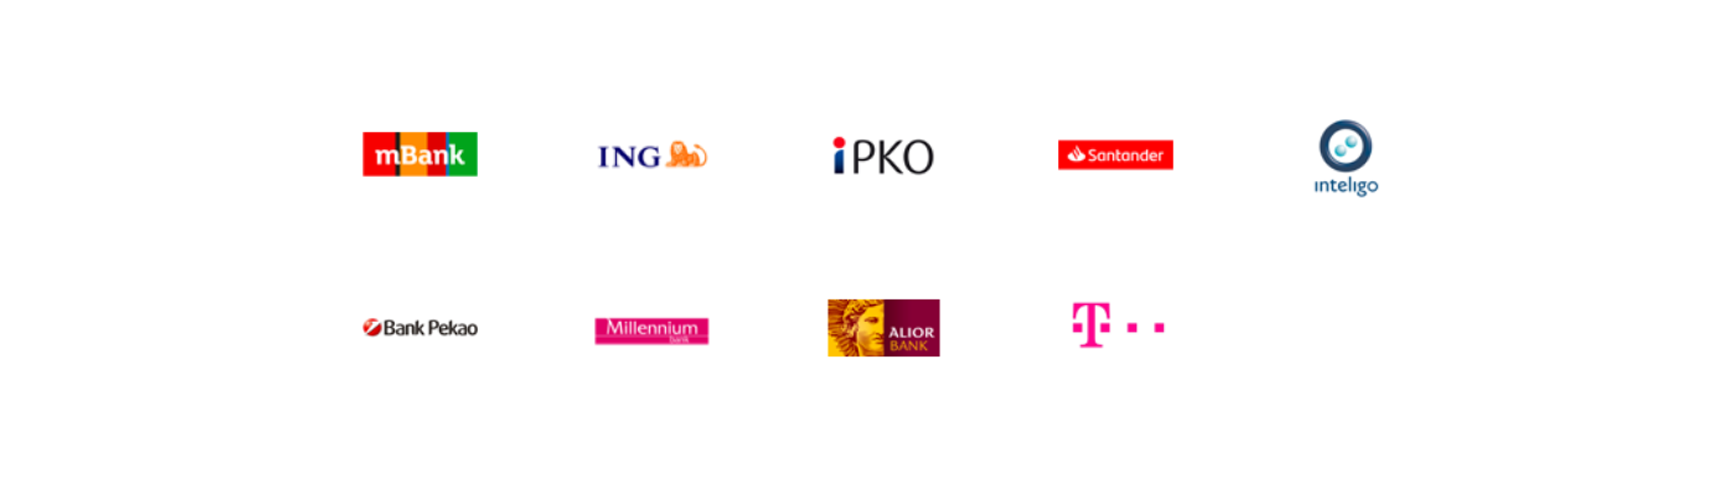 Logotypy banków w których można potwierdzić profil zaufany